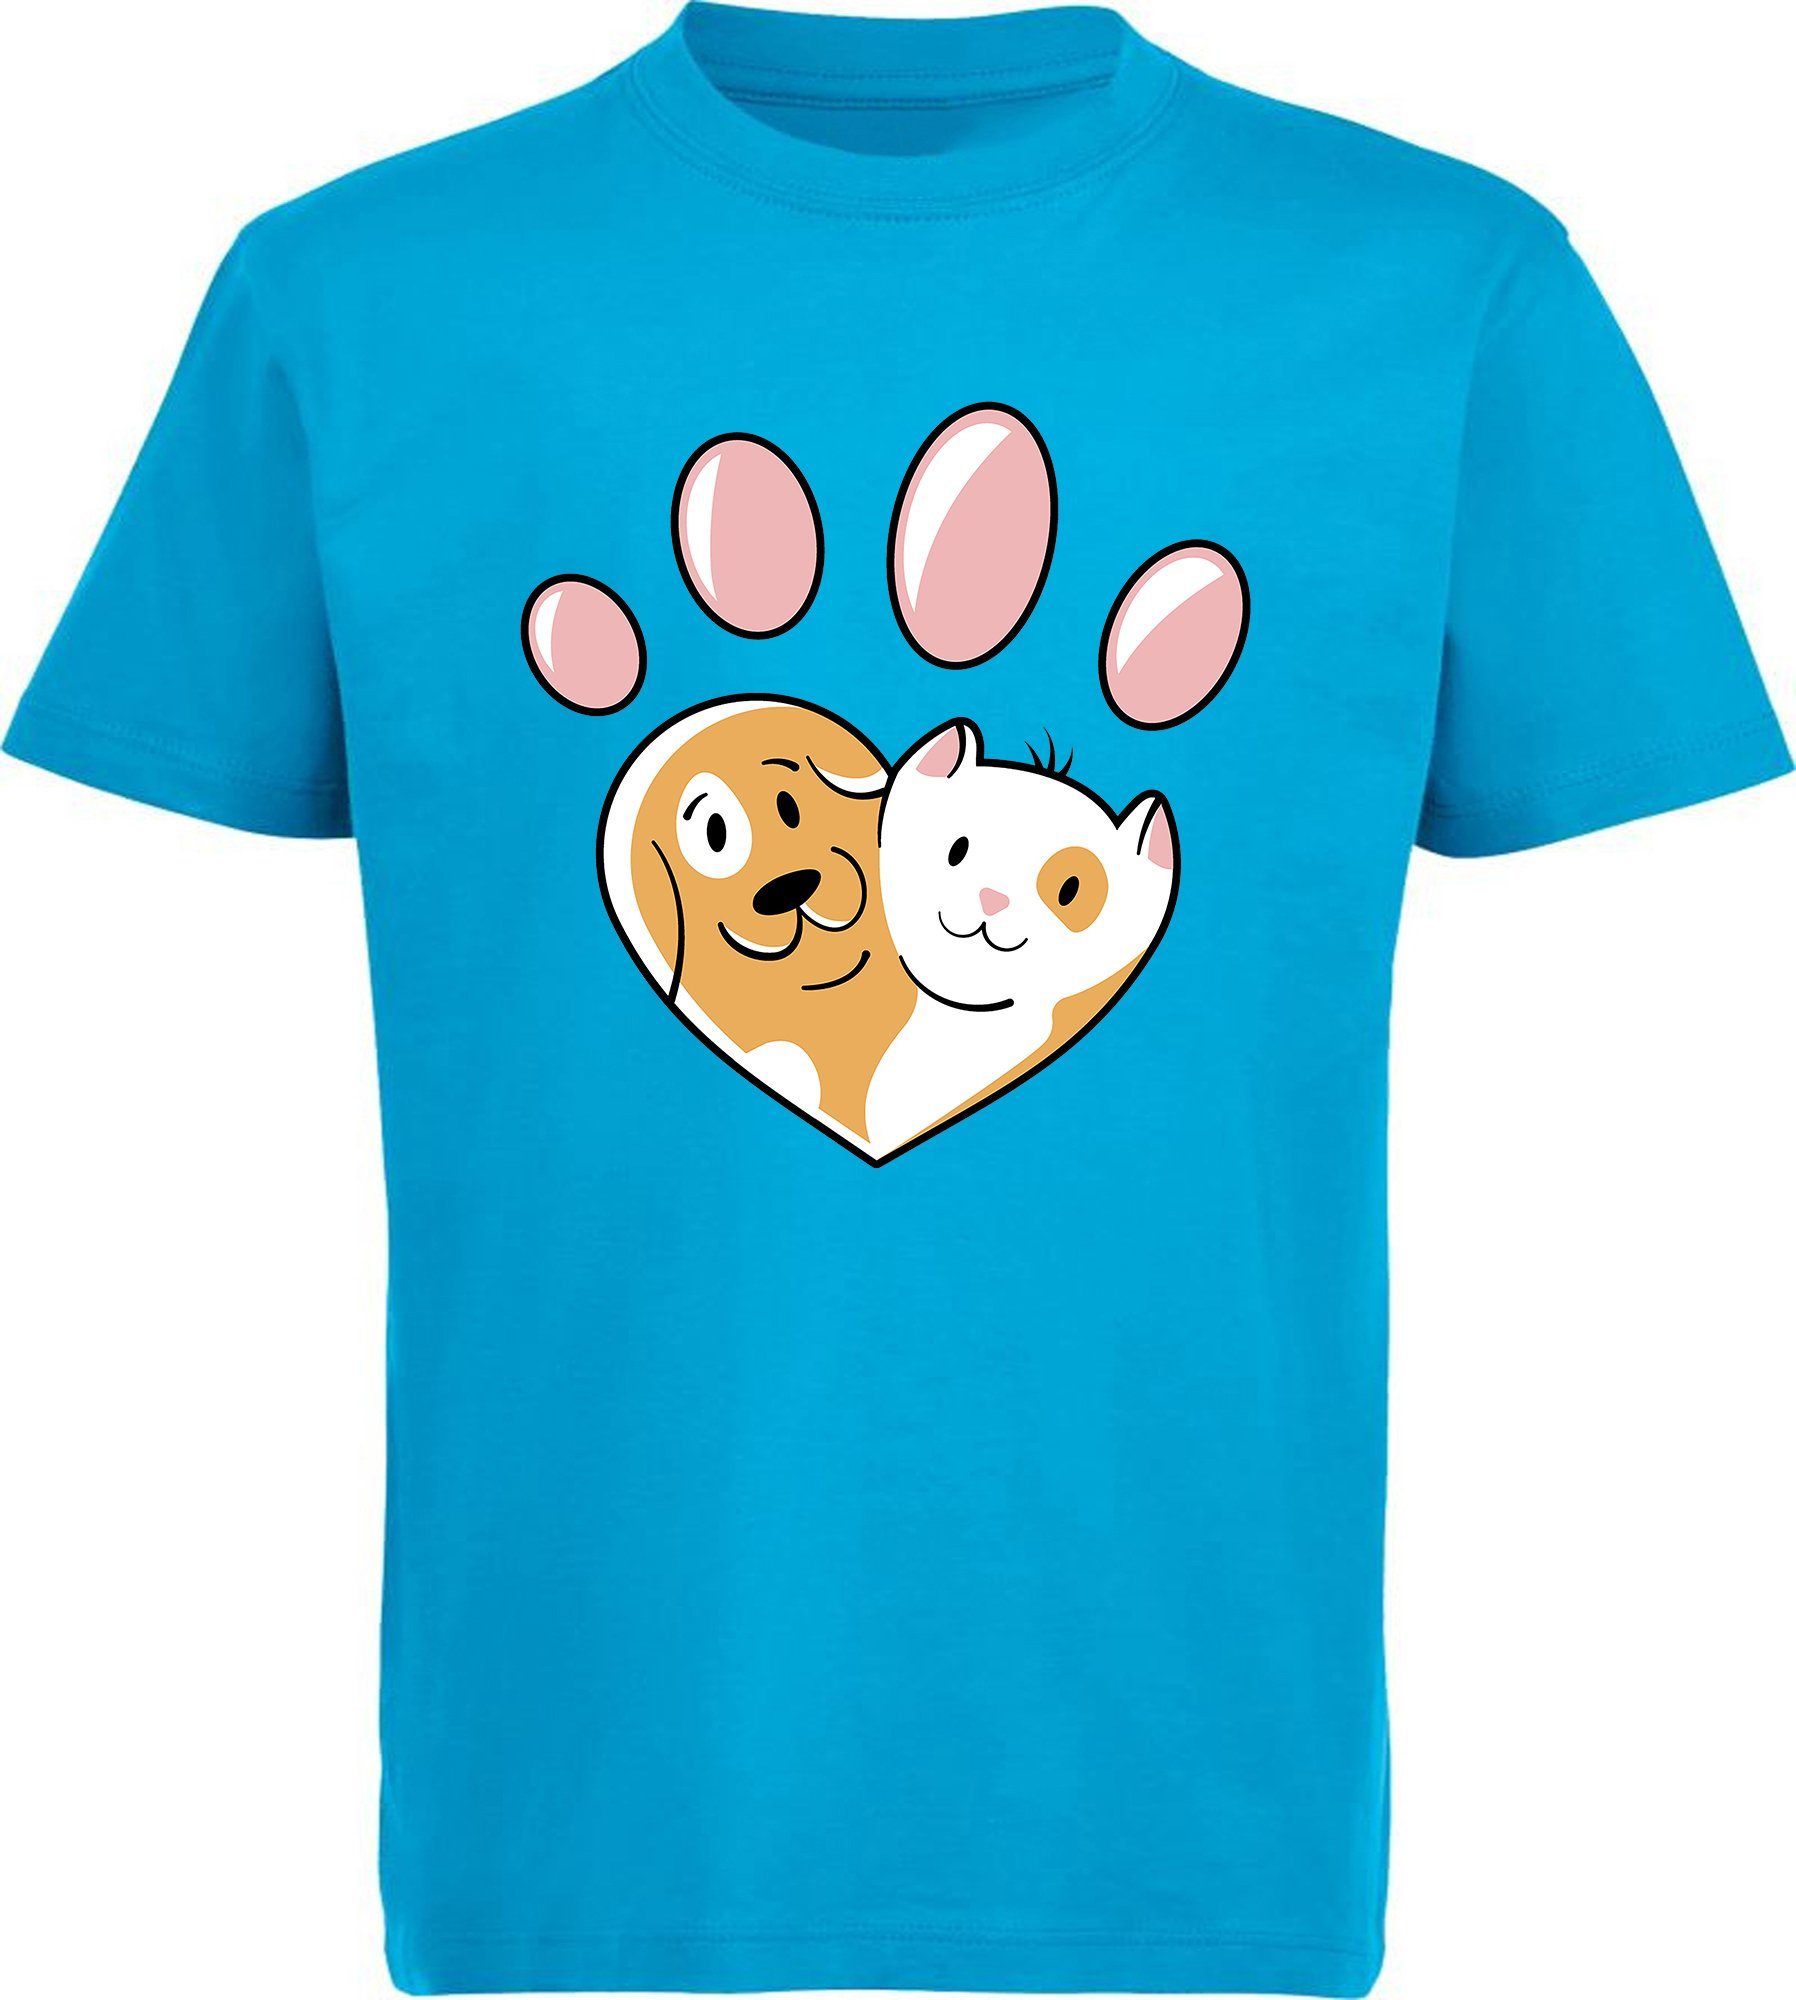 MyDesign24 Print-Shirt bedrucktes Kinder Hunde T-Shirt - Herz Pfote mit Hund und Katze Baumwollshirt mit Aufdruck, i223 aqua blau